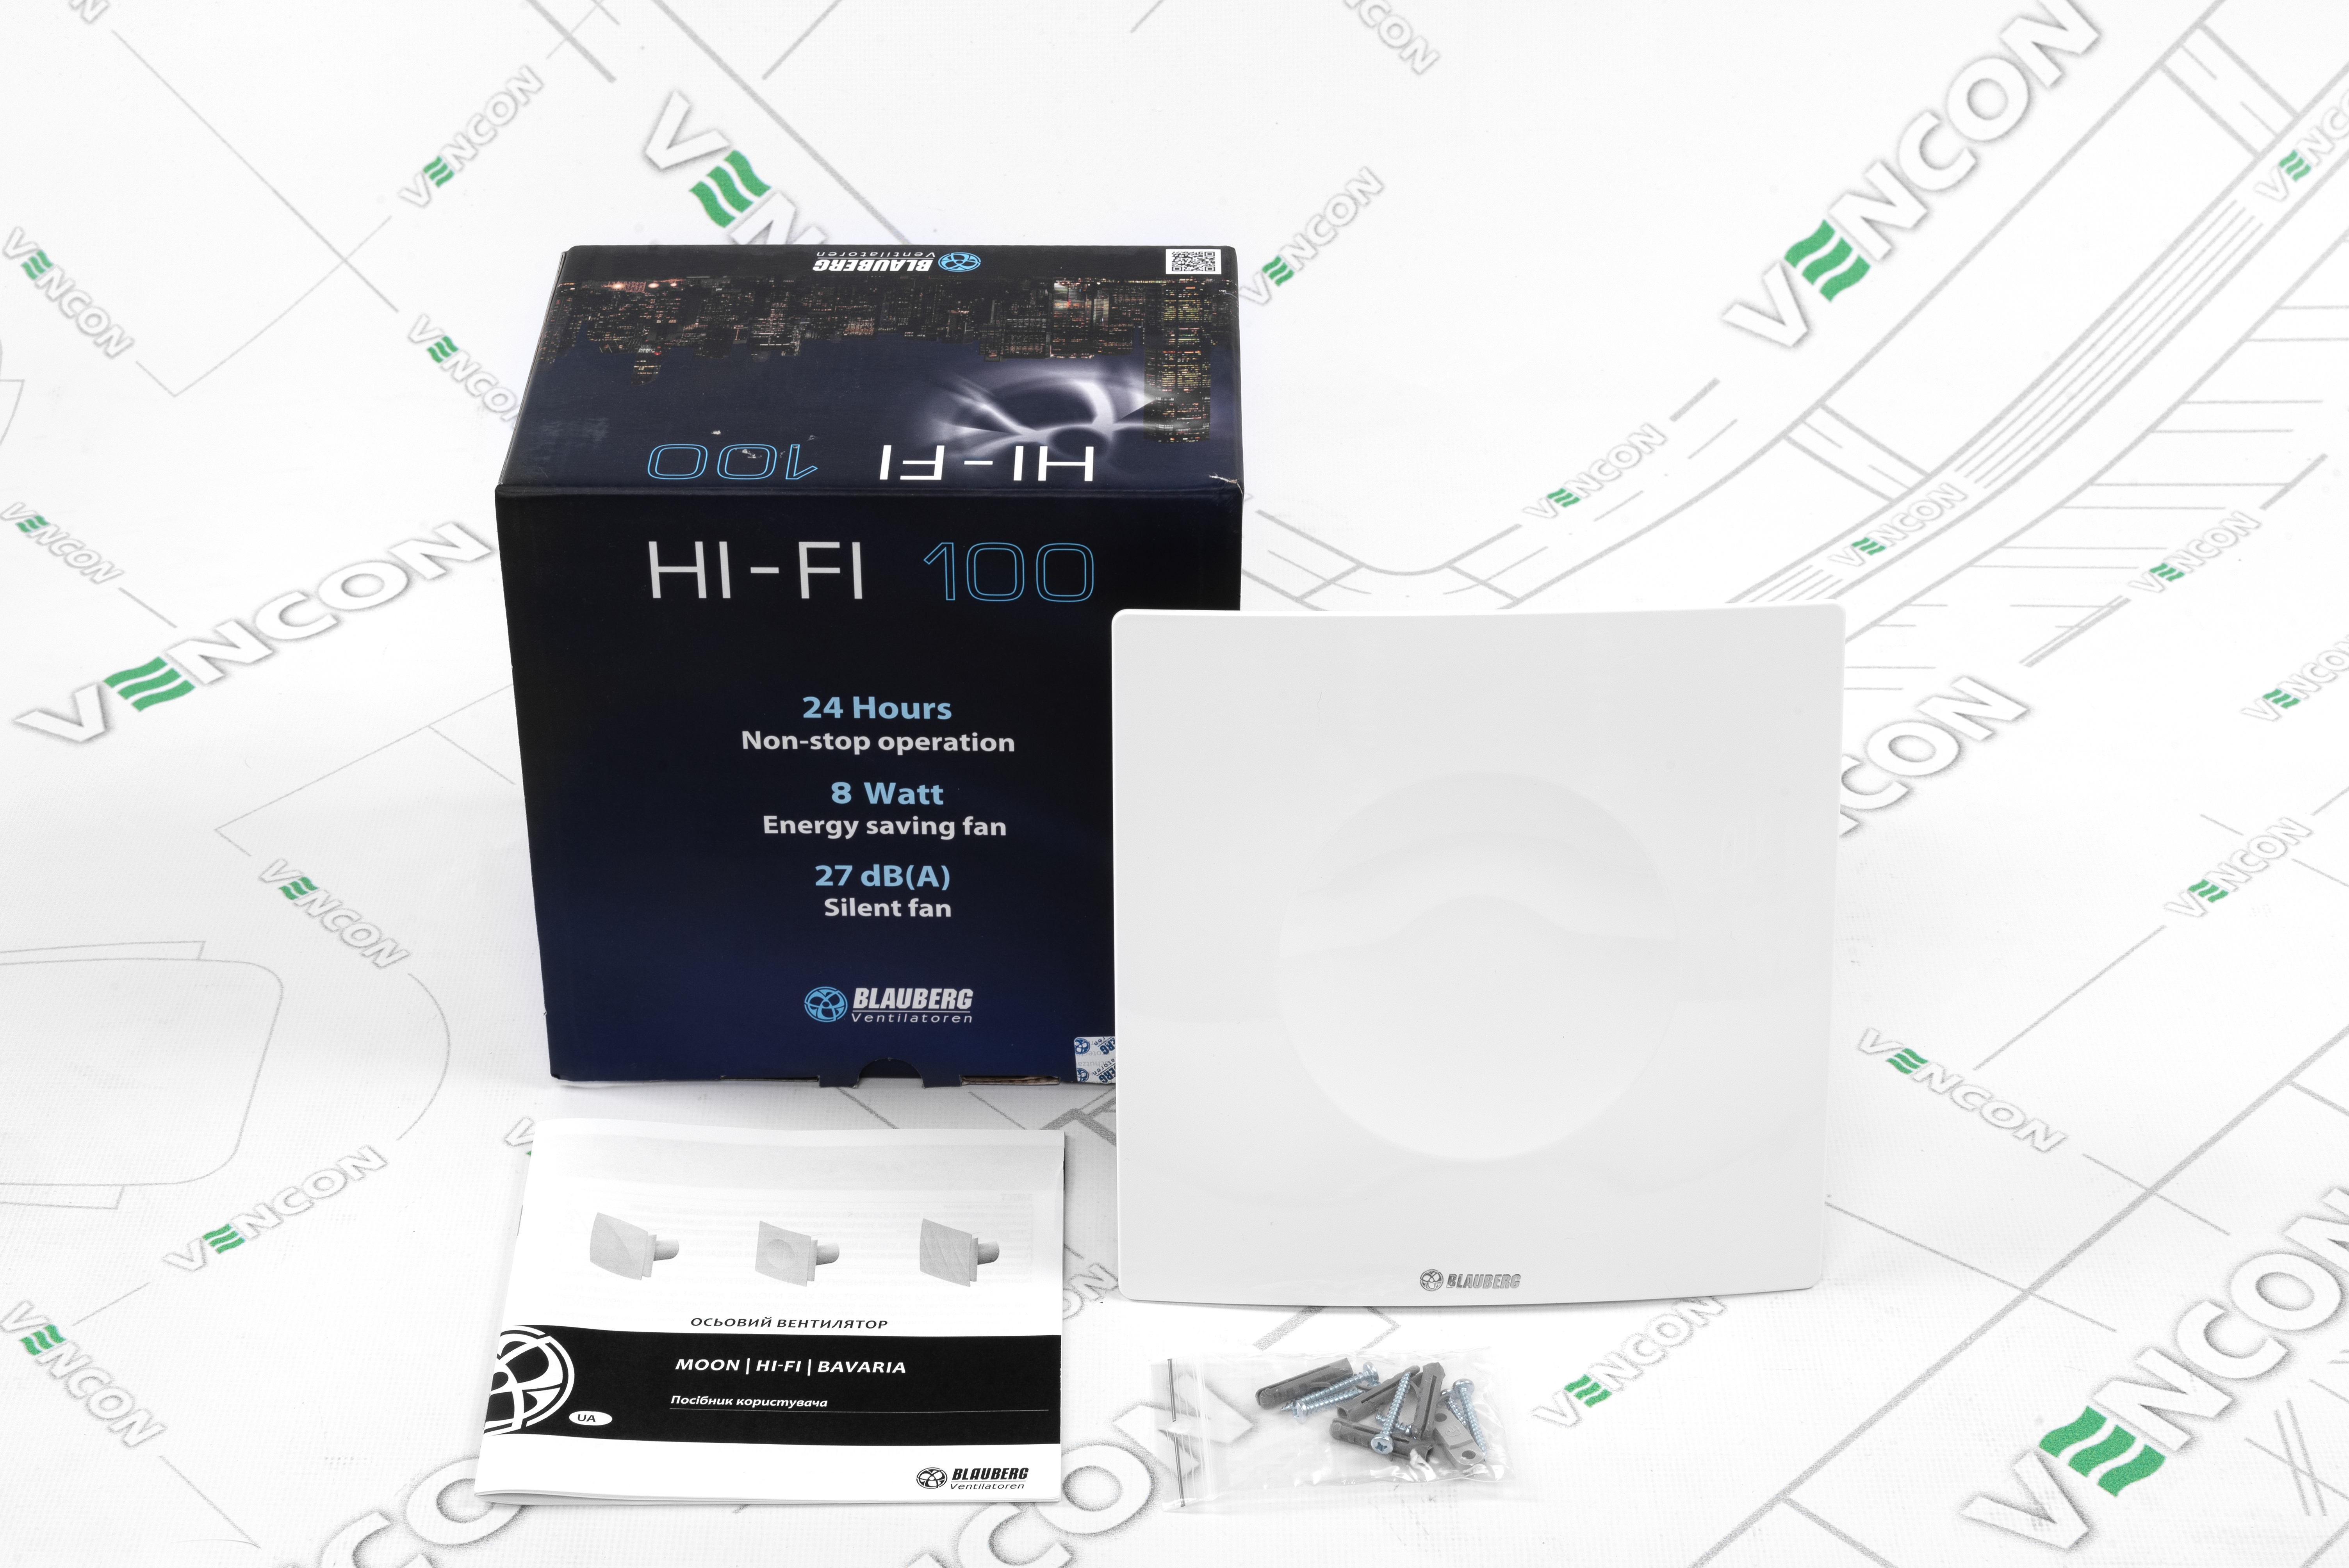 Вытяжной вентилятор Blauberg Hi-Fi 100 T отзывы - изображения 5